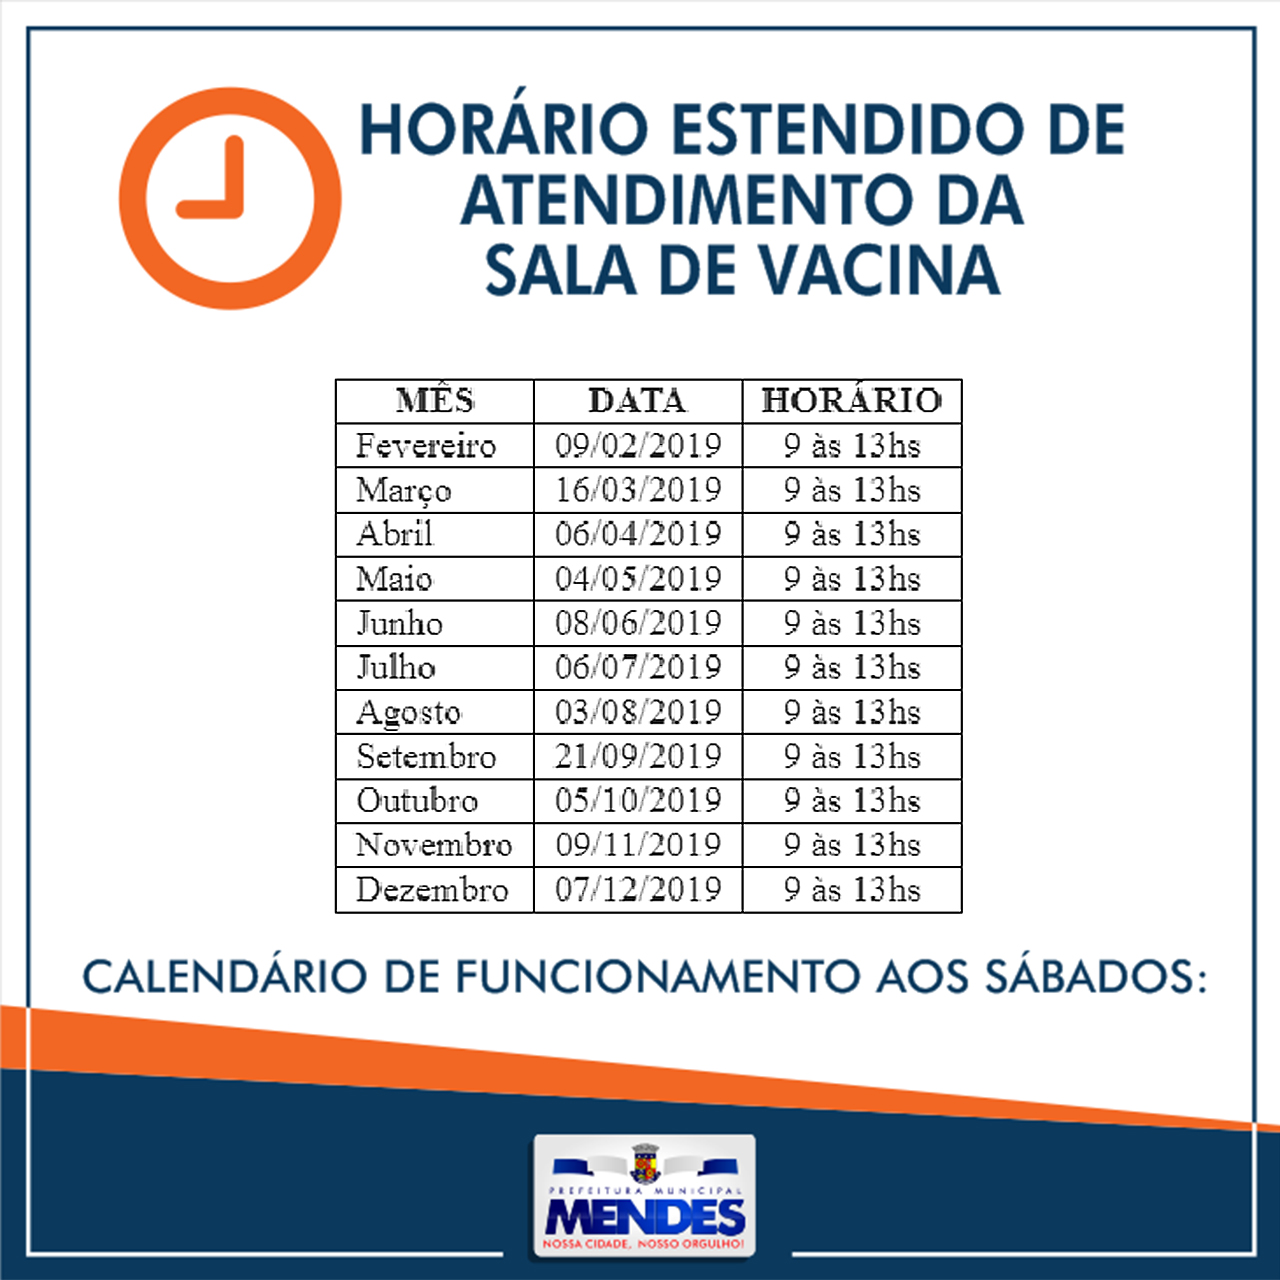 /Uploads/Images/sala_de_vacina_-_horario.jpg